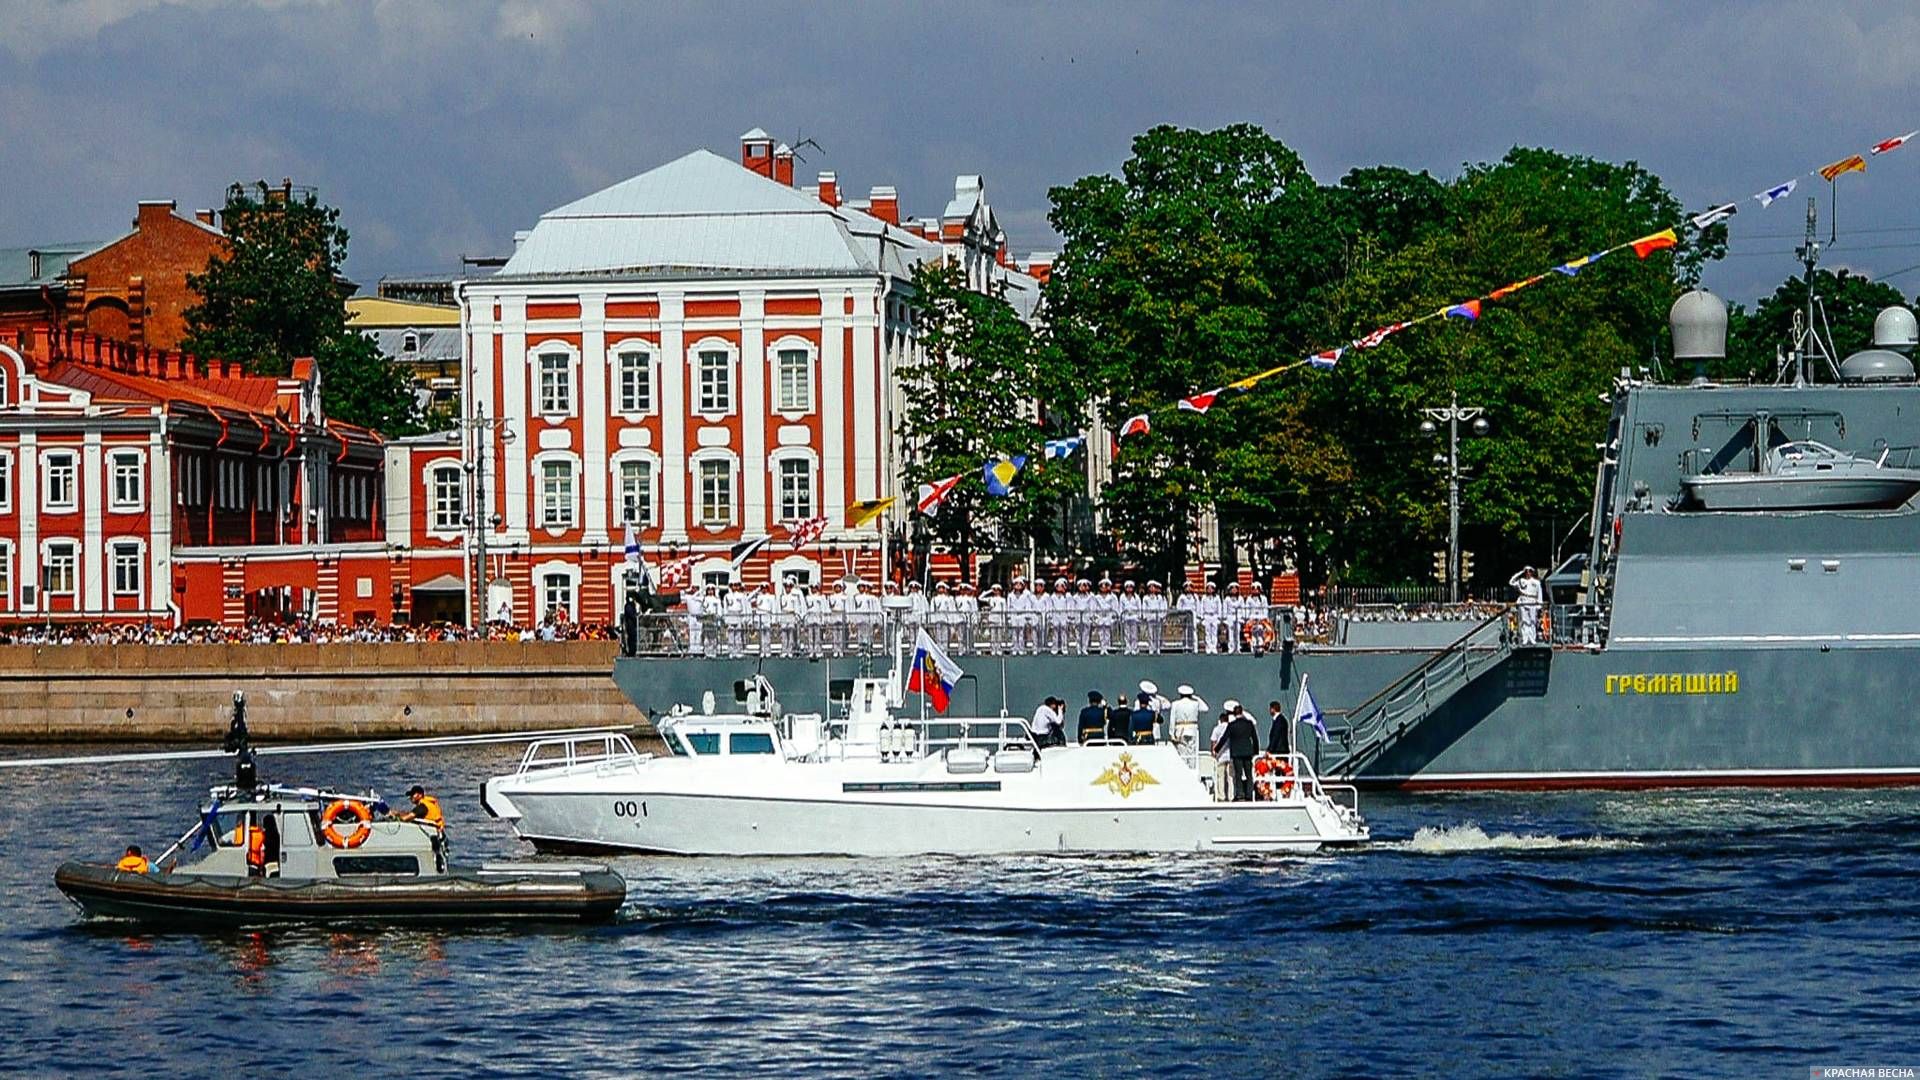 Борт 001 принимает Военно-морской парад в Санкт-Петербурге 28.07.2019